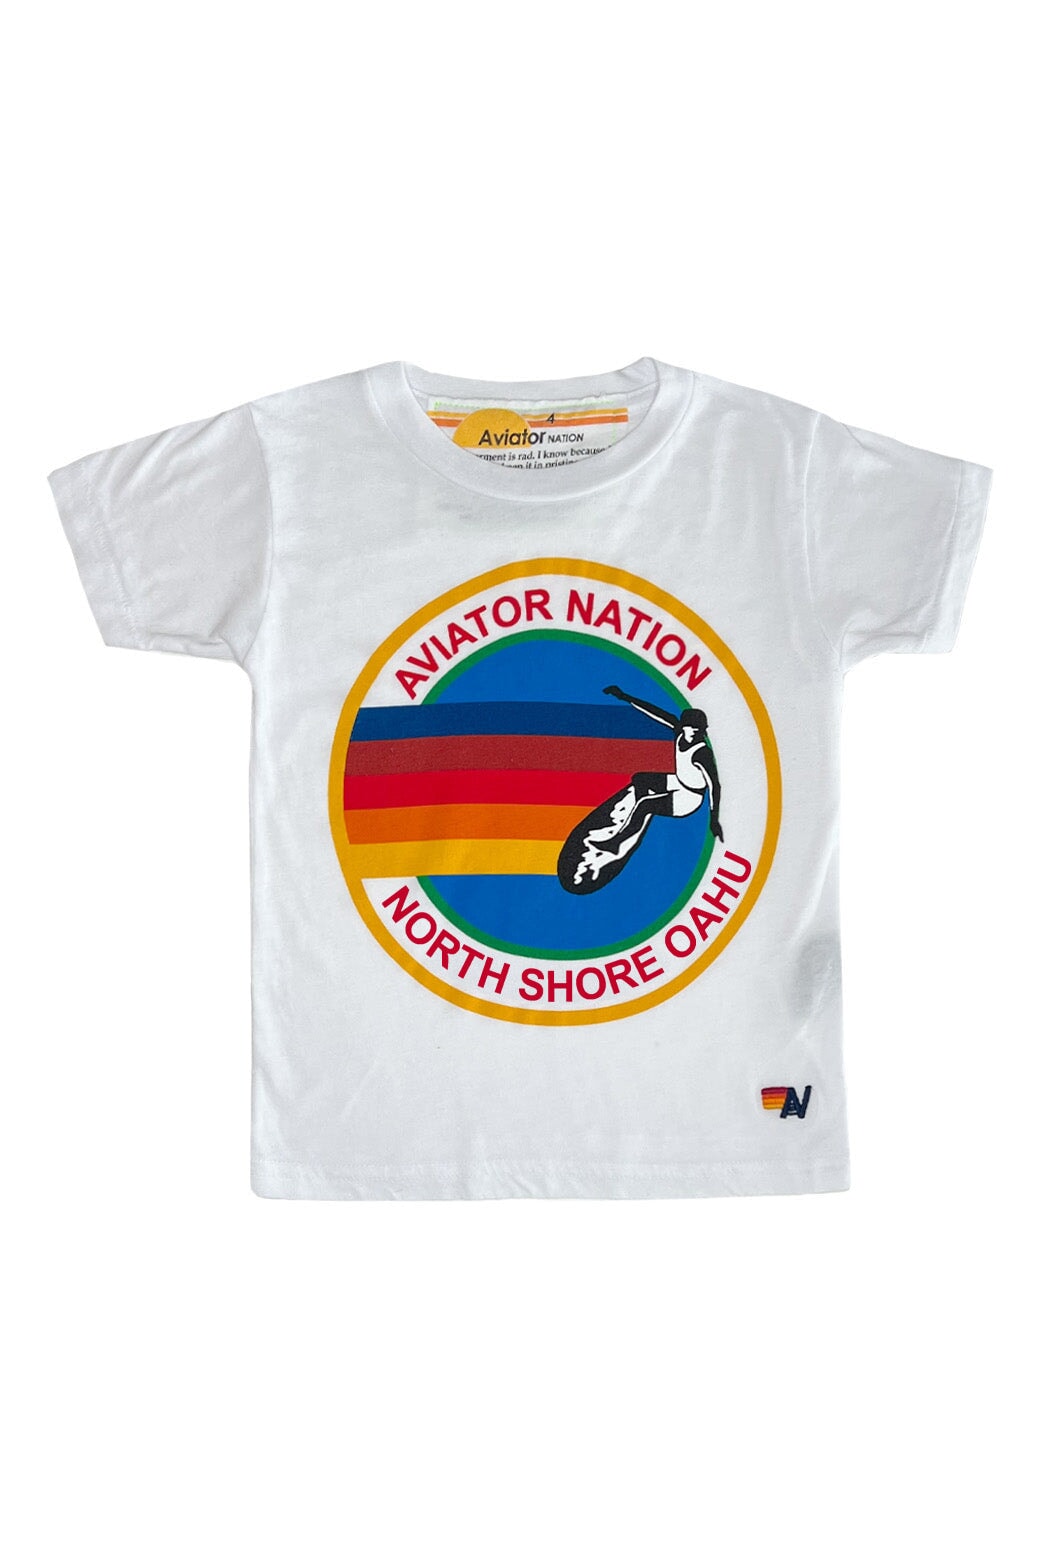 KID'S AVIATOR NATION NORTH SHORE TEE - WHITE Kid's Tee Aviator Nation 